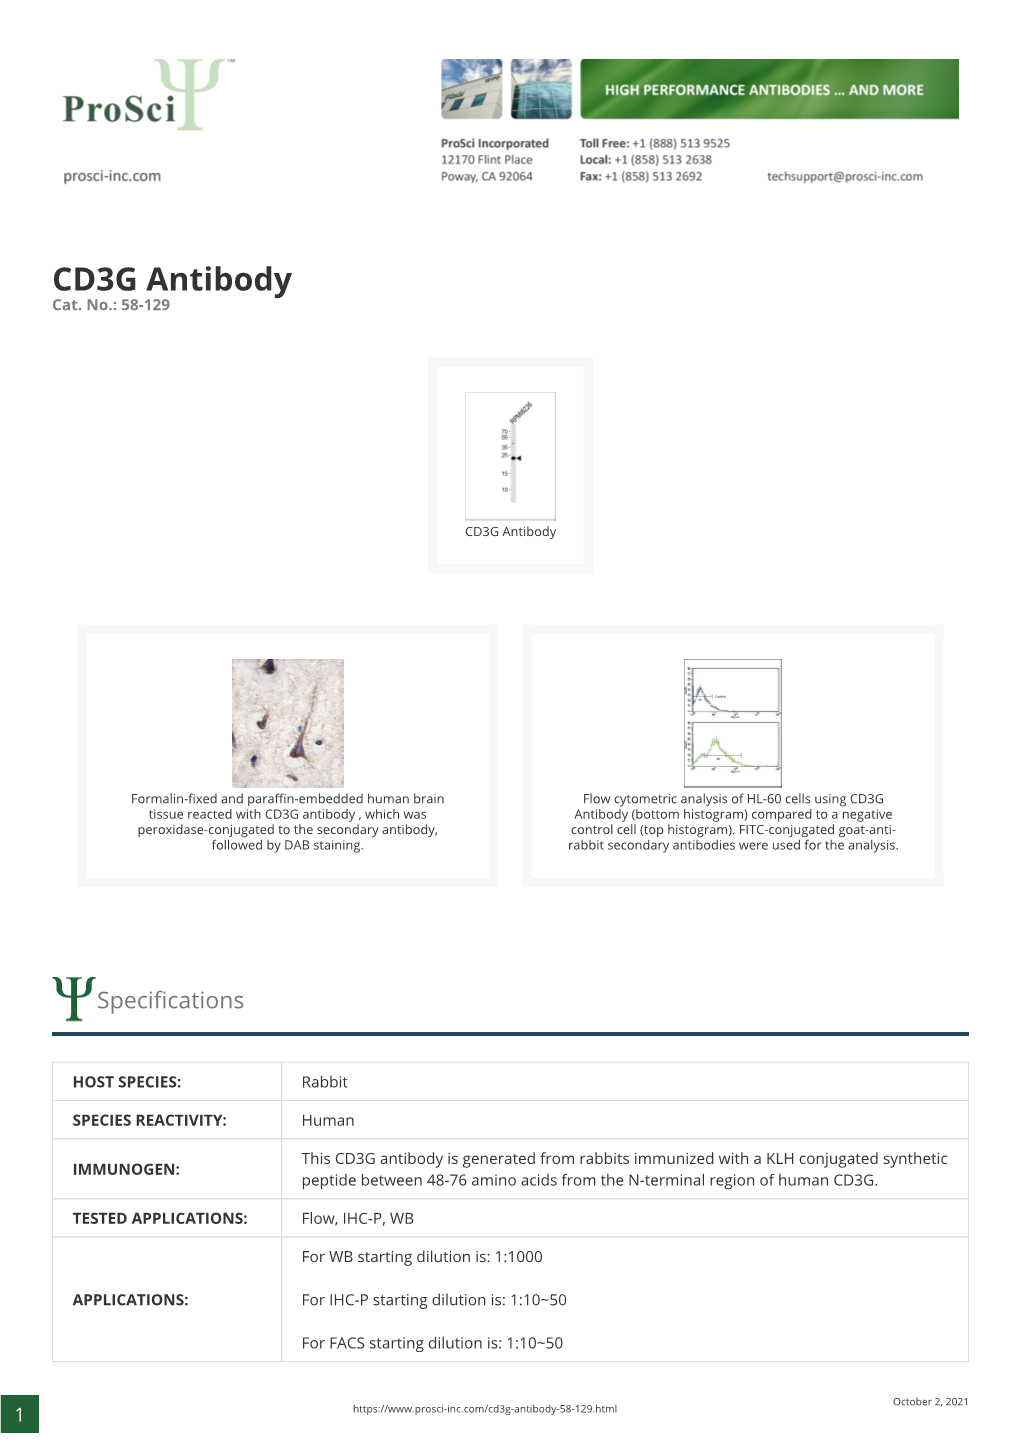 CD3G Antibody Cat